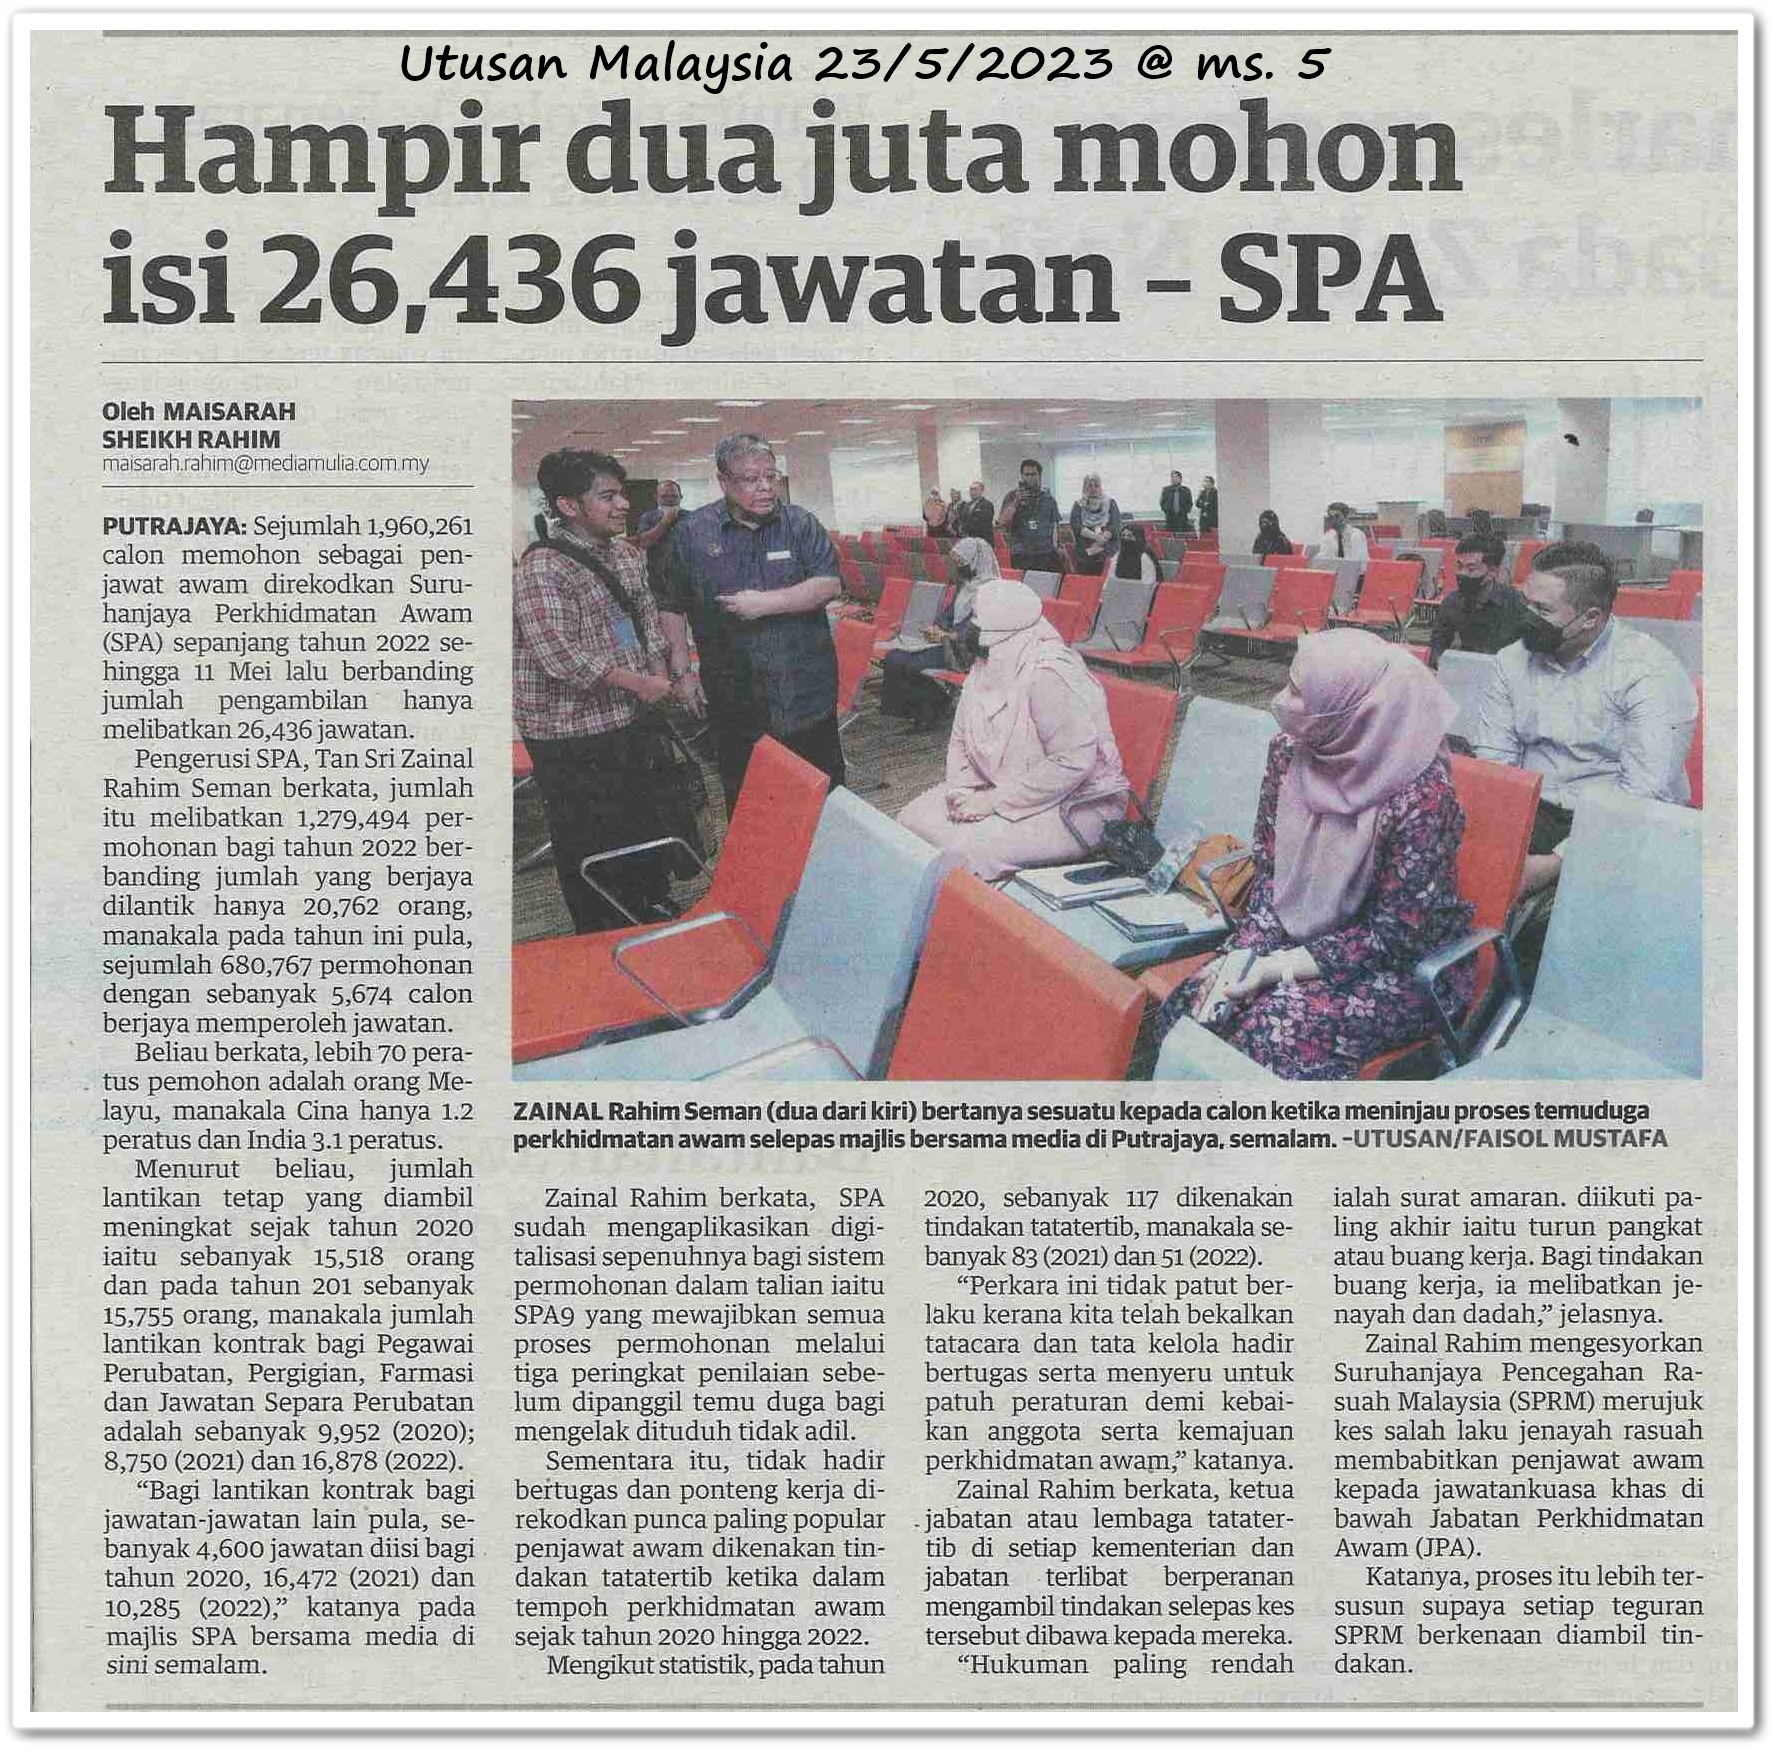 Hampir dua juta mohon isi 26,436 jawatan ;SPA - Keratan akhbar Utusan Malaysia 23 Mei 2023